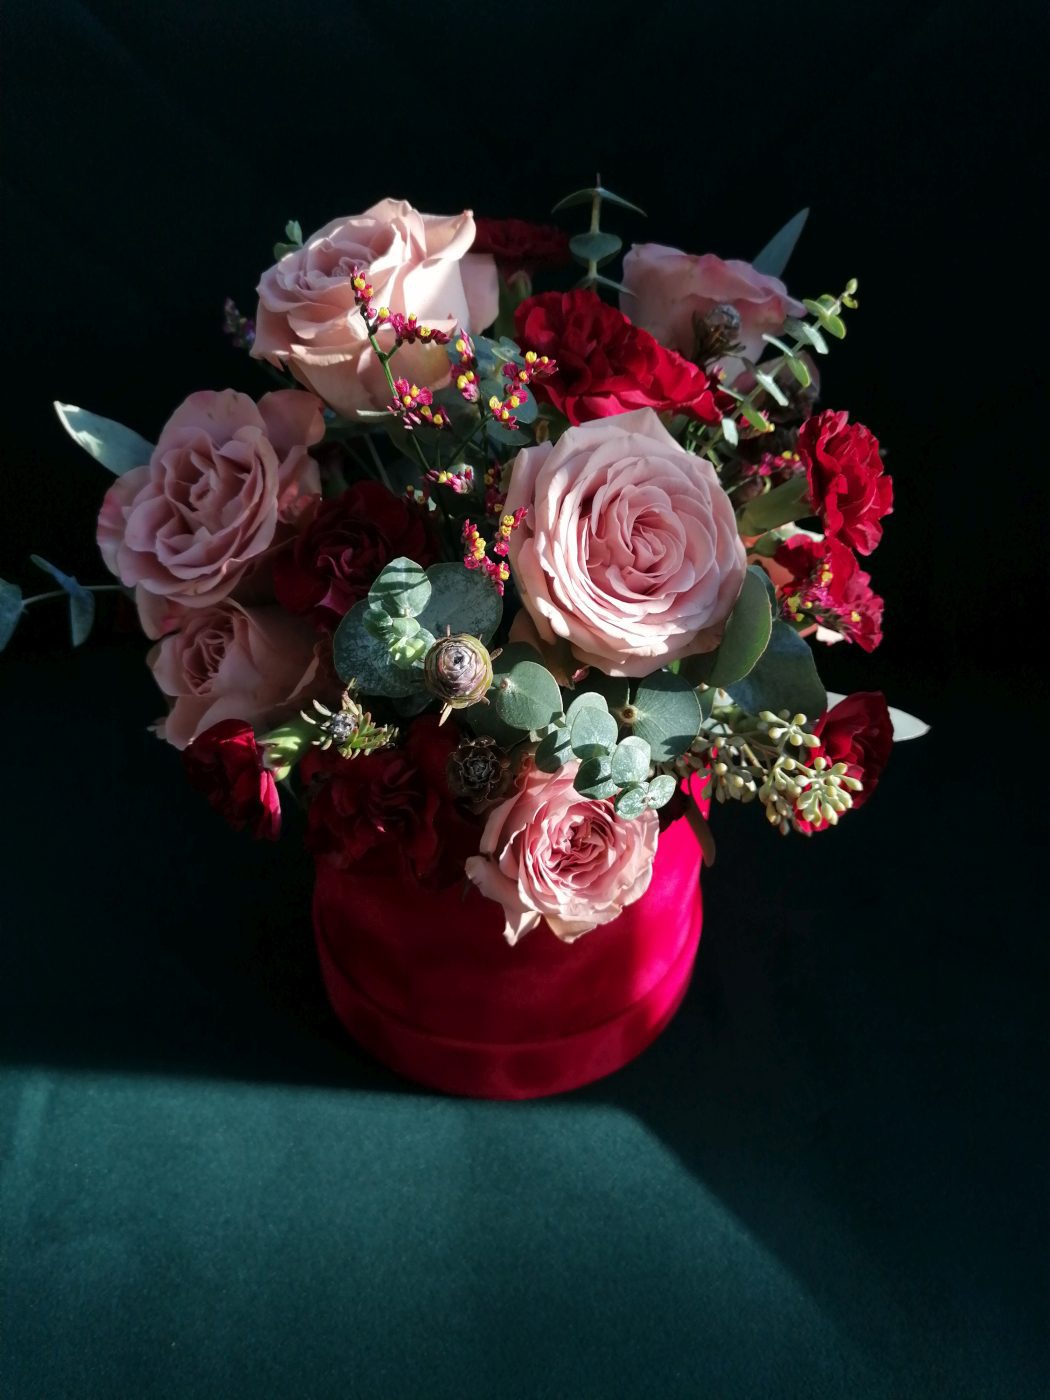 Delikatny odcień beżowych róż kontrastuje z czerwienią goździków oraz pudełka